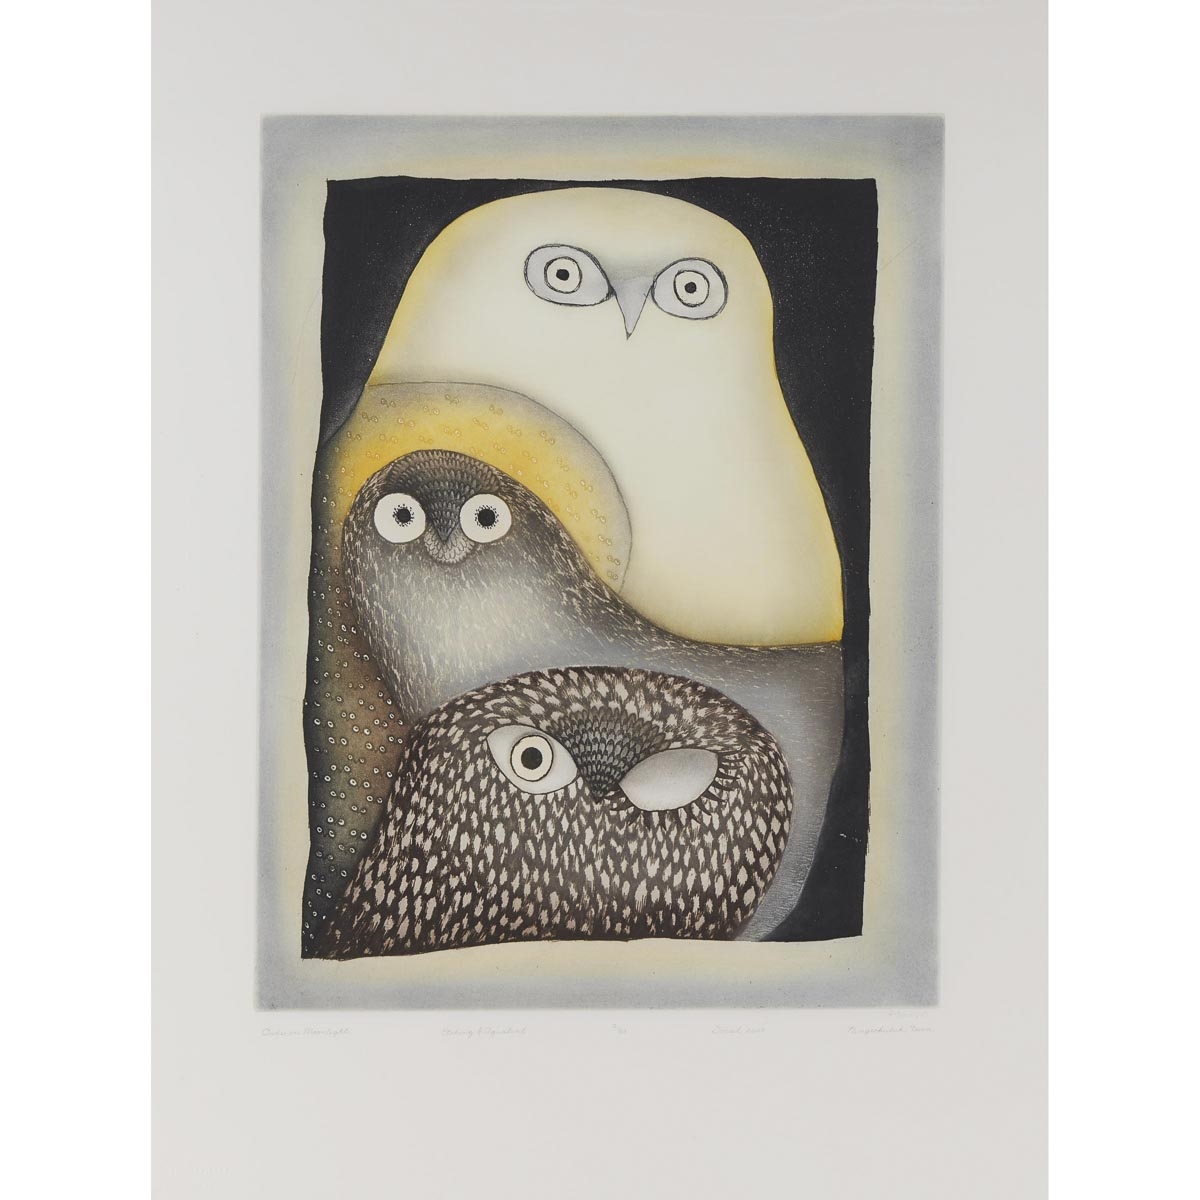 OWLS IN MOONLIGHT, 2007 by Ningeokuluk Teevee, 2007